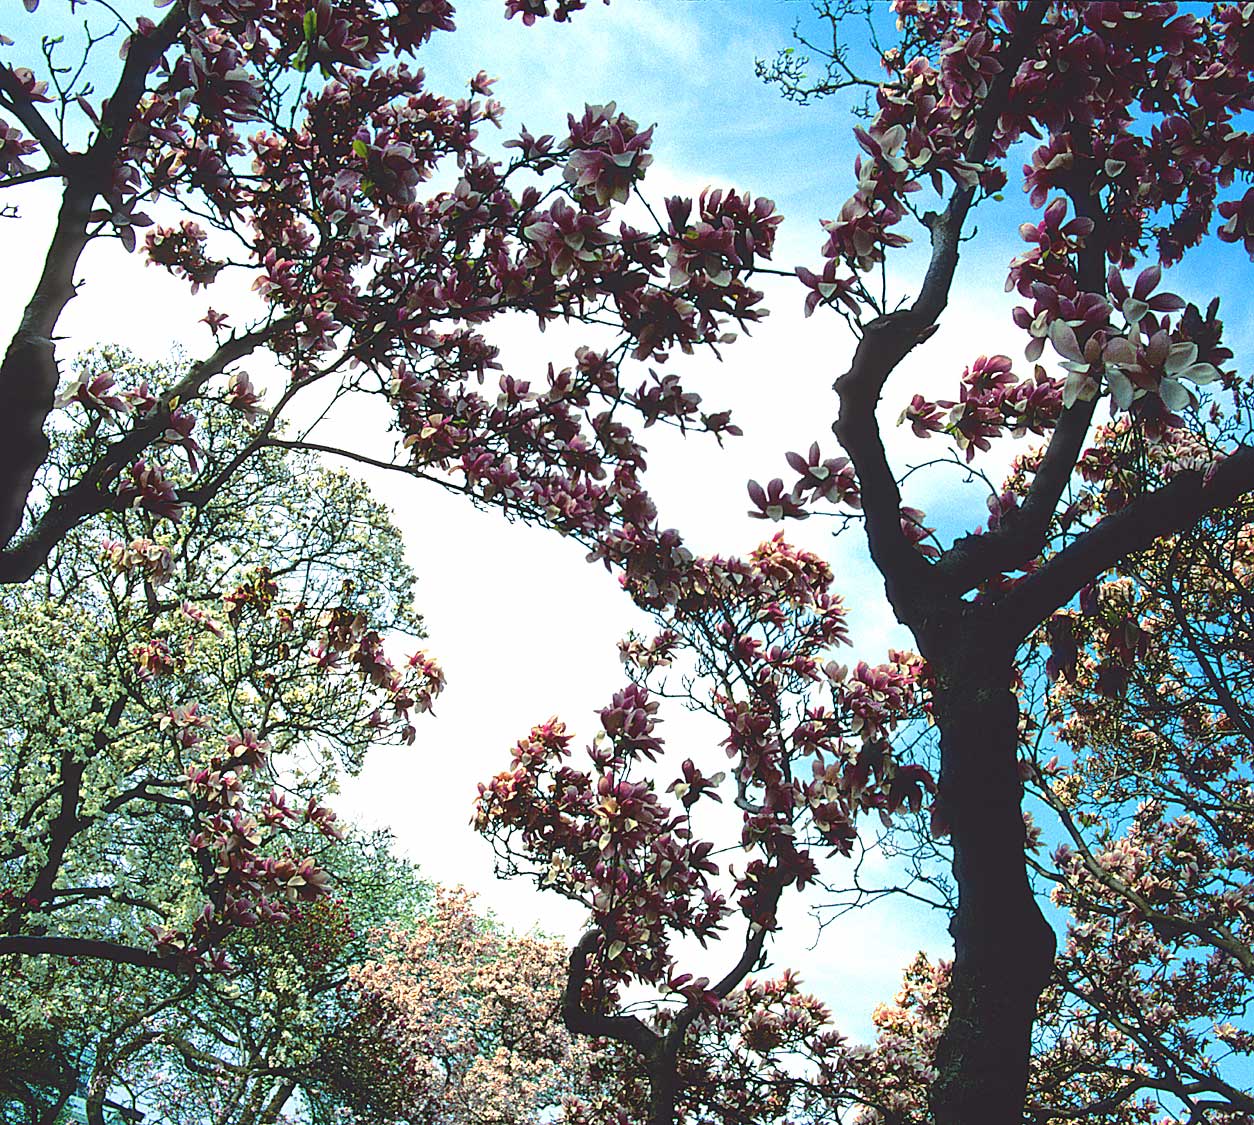 MagnoliaTrees2